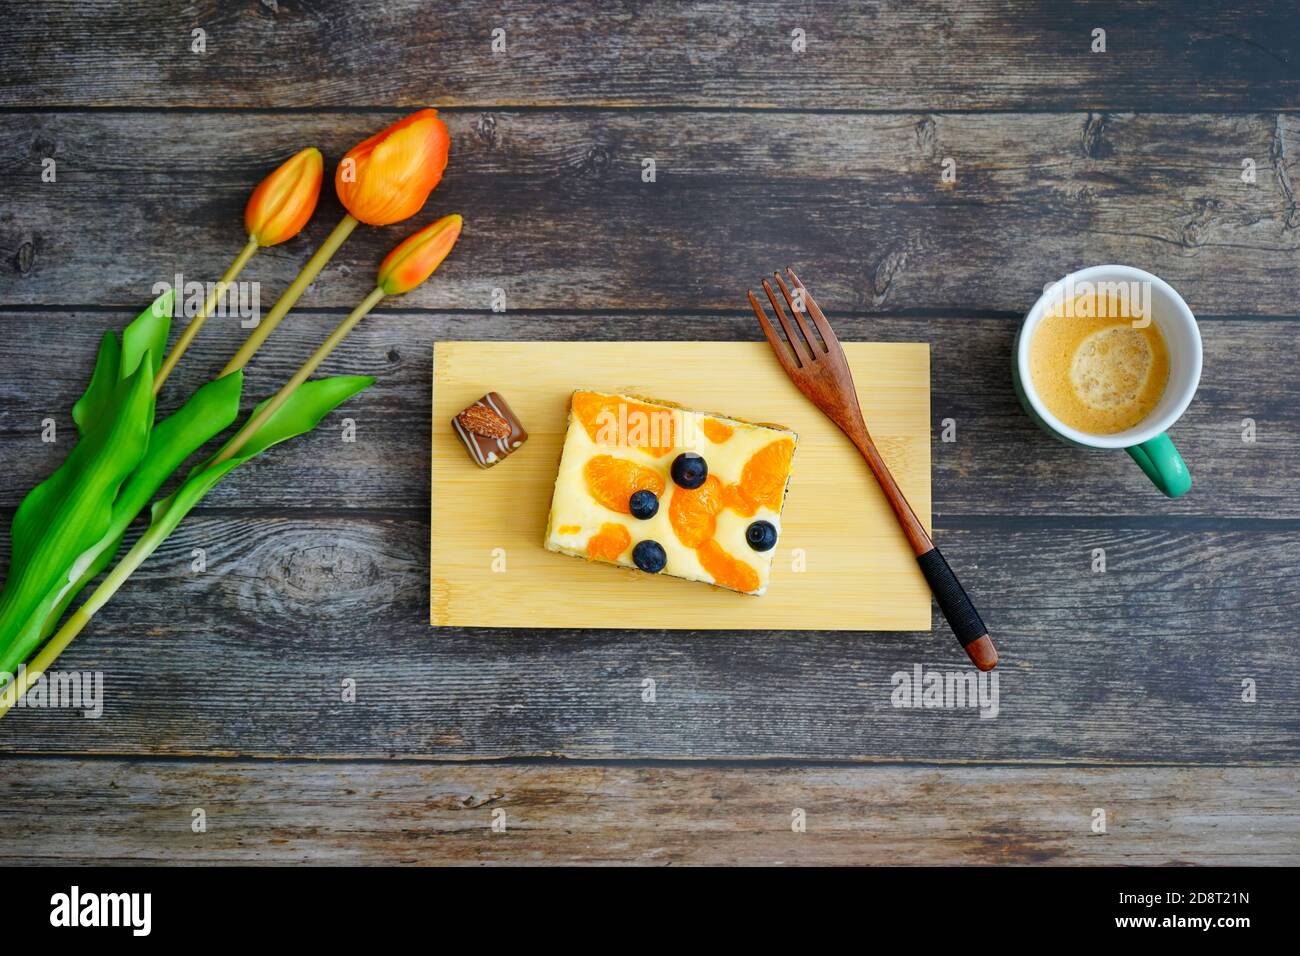 Tempo del caffè in Germania: Torta di formaggio fatta in casa con cioccolato e caffè su sfondo di legno con fiori di tulipano arancio per la decorazione. Foto Stock